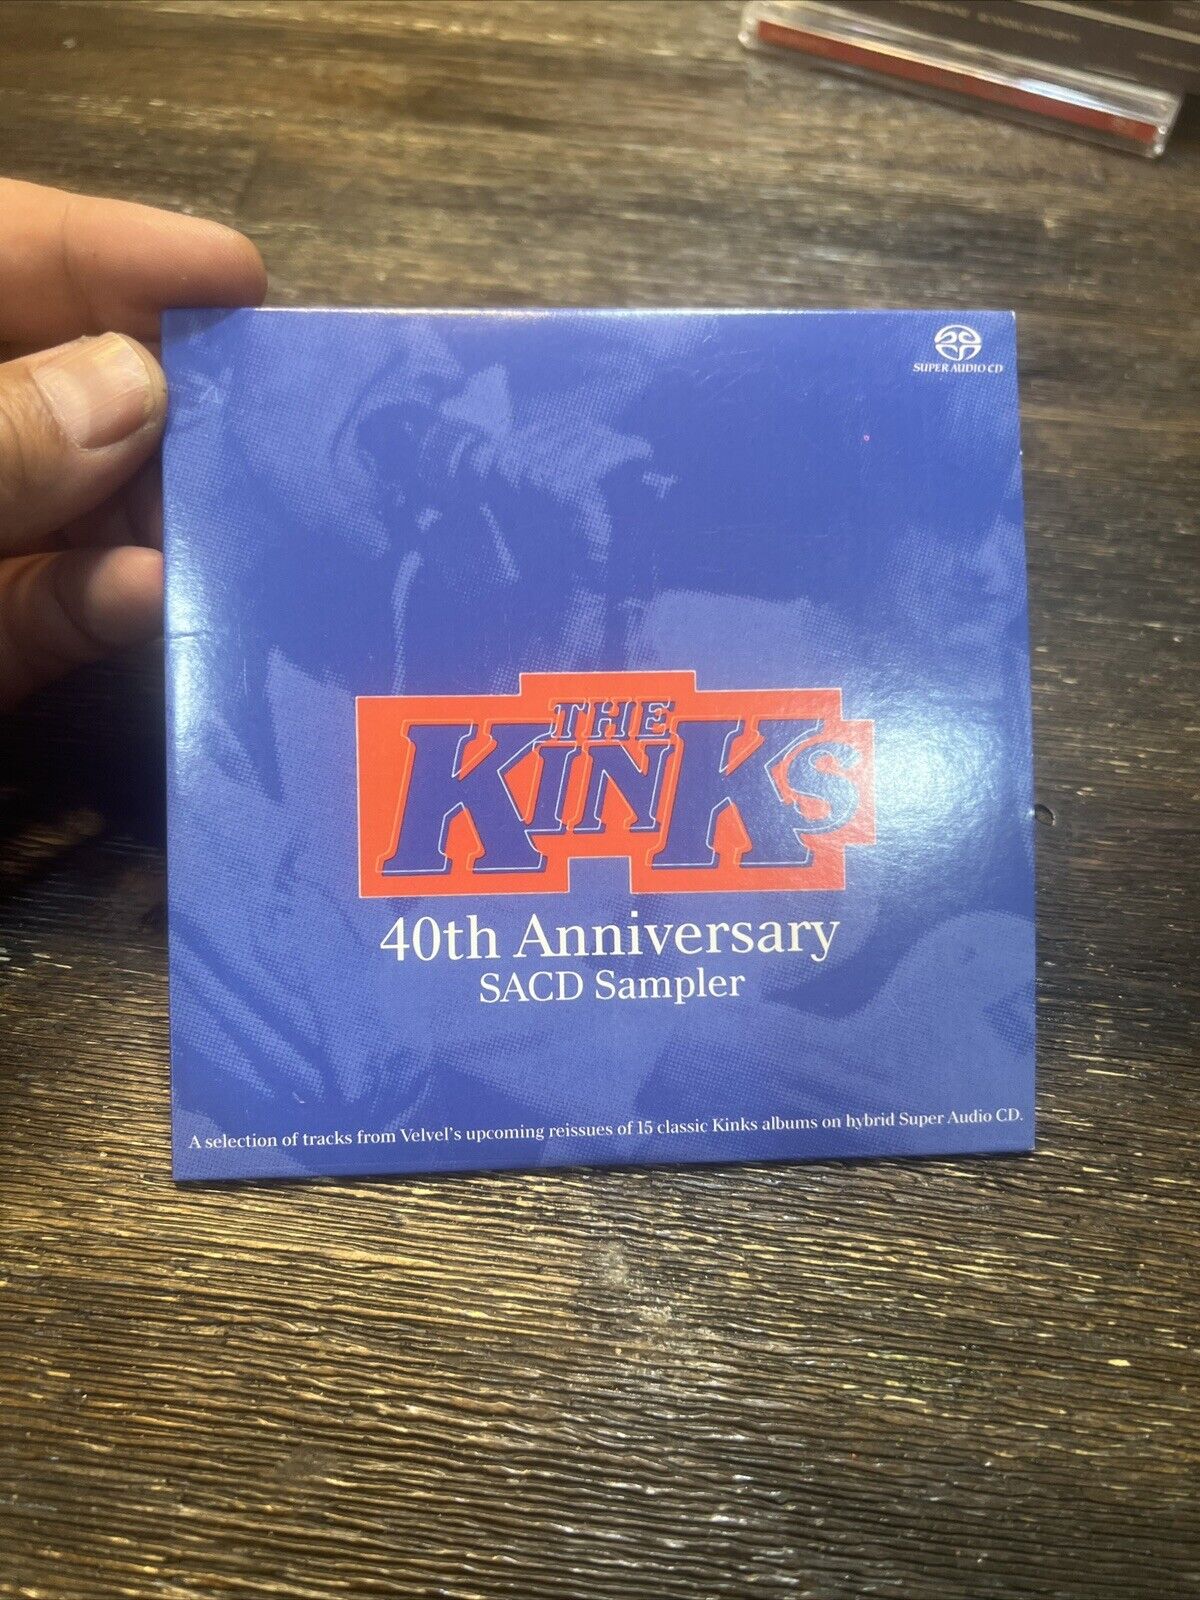 The Kinks - 40th Anniversary CD Sampler 2005 SACD 14 Tracks RARE